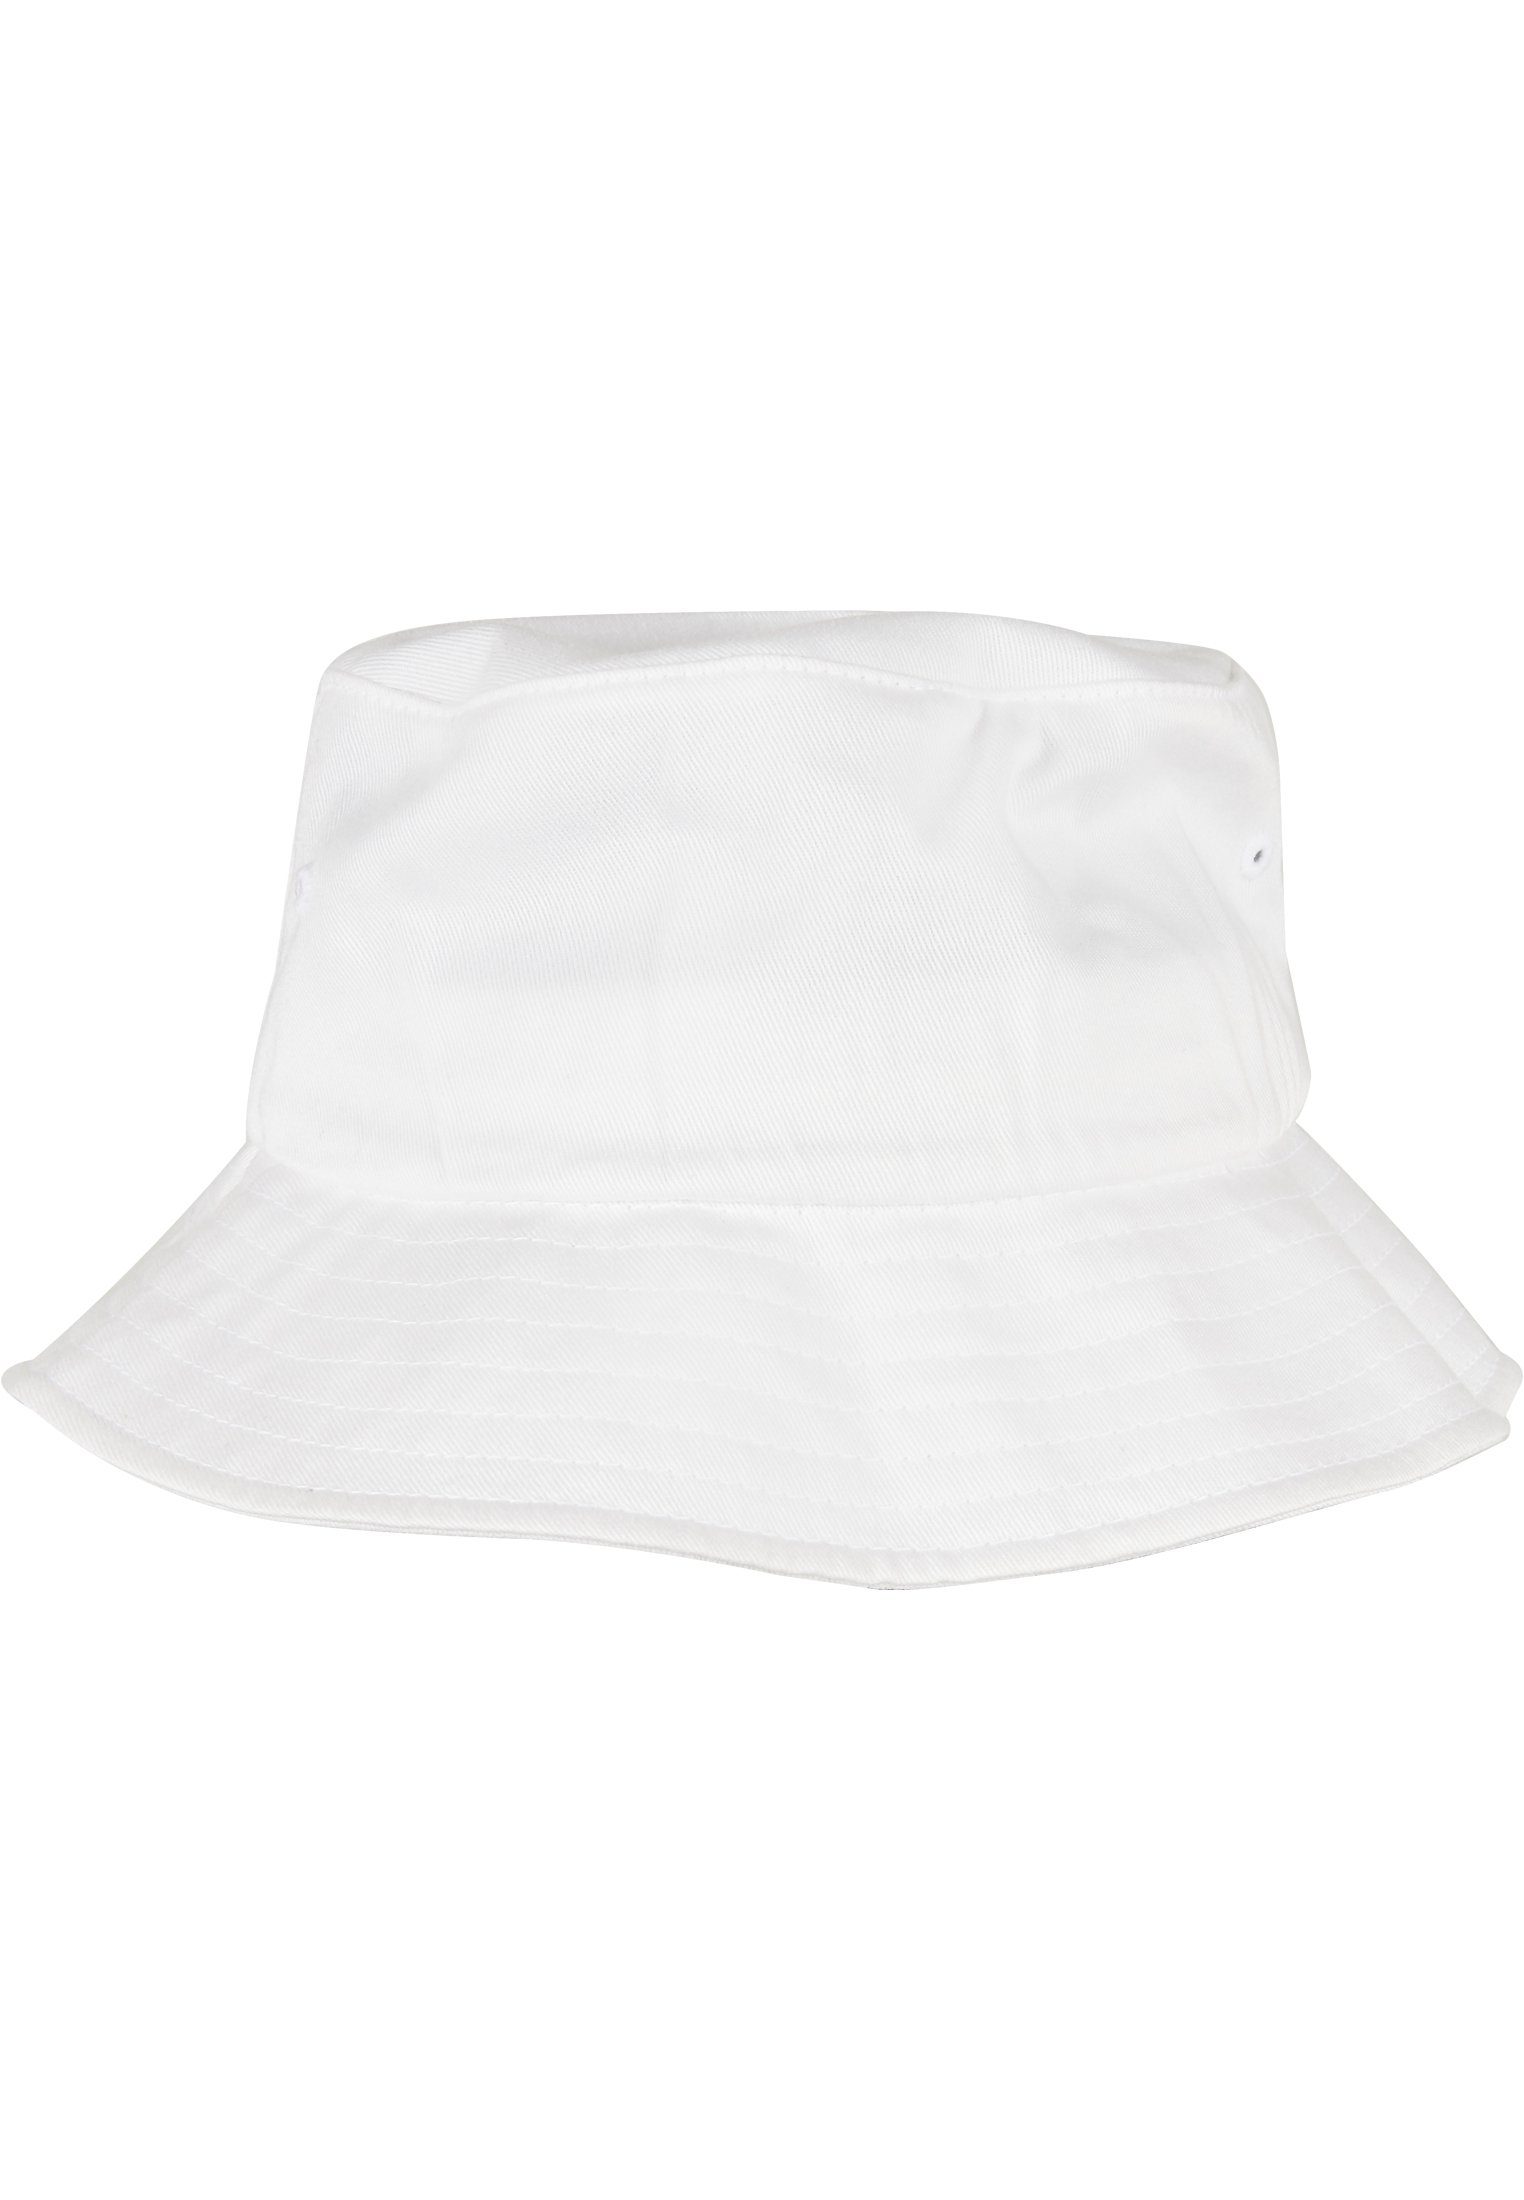 Flexfit Flex Accessoires Hat Bucket Cotton Organic Cap white